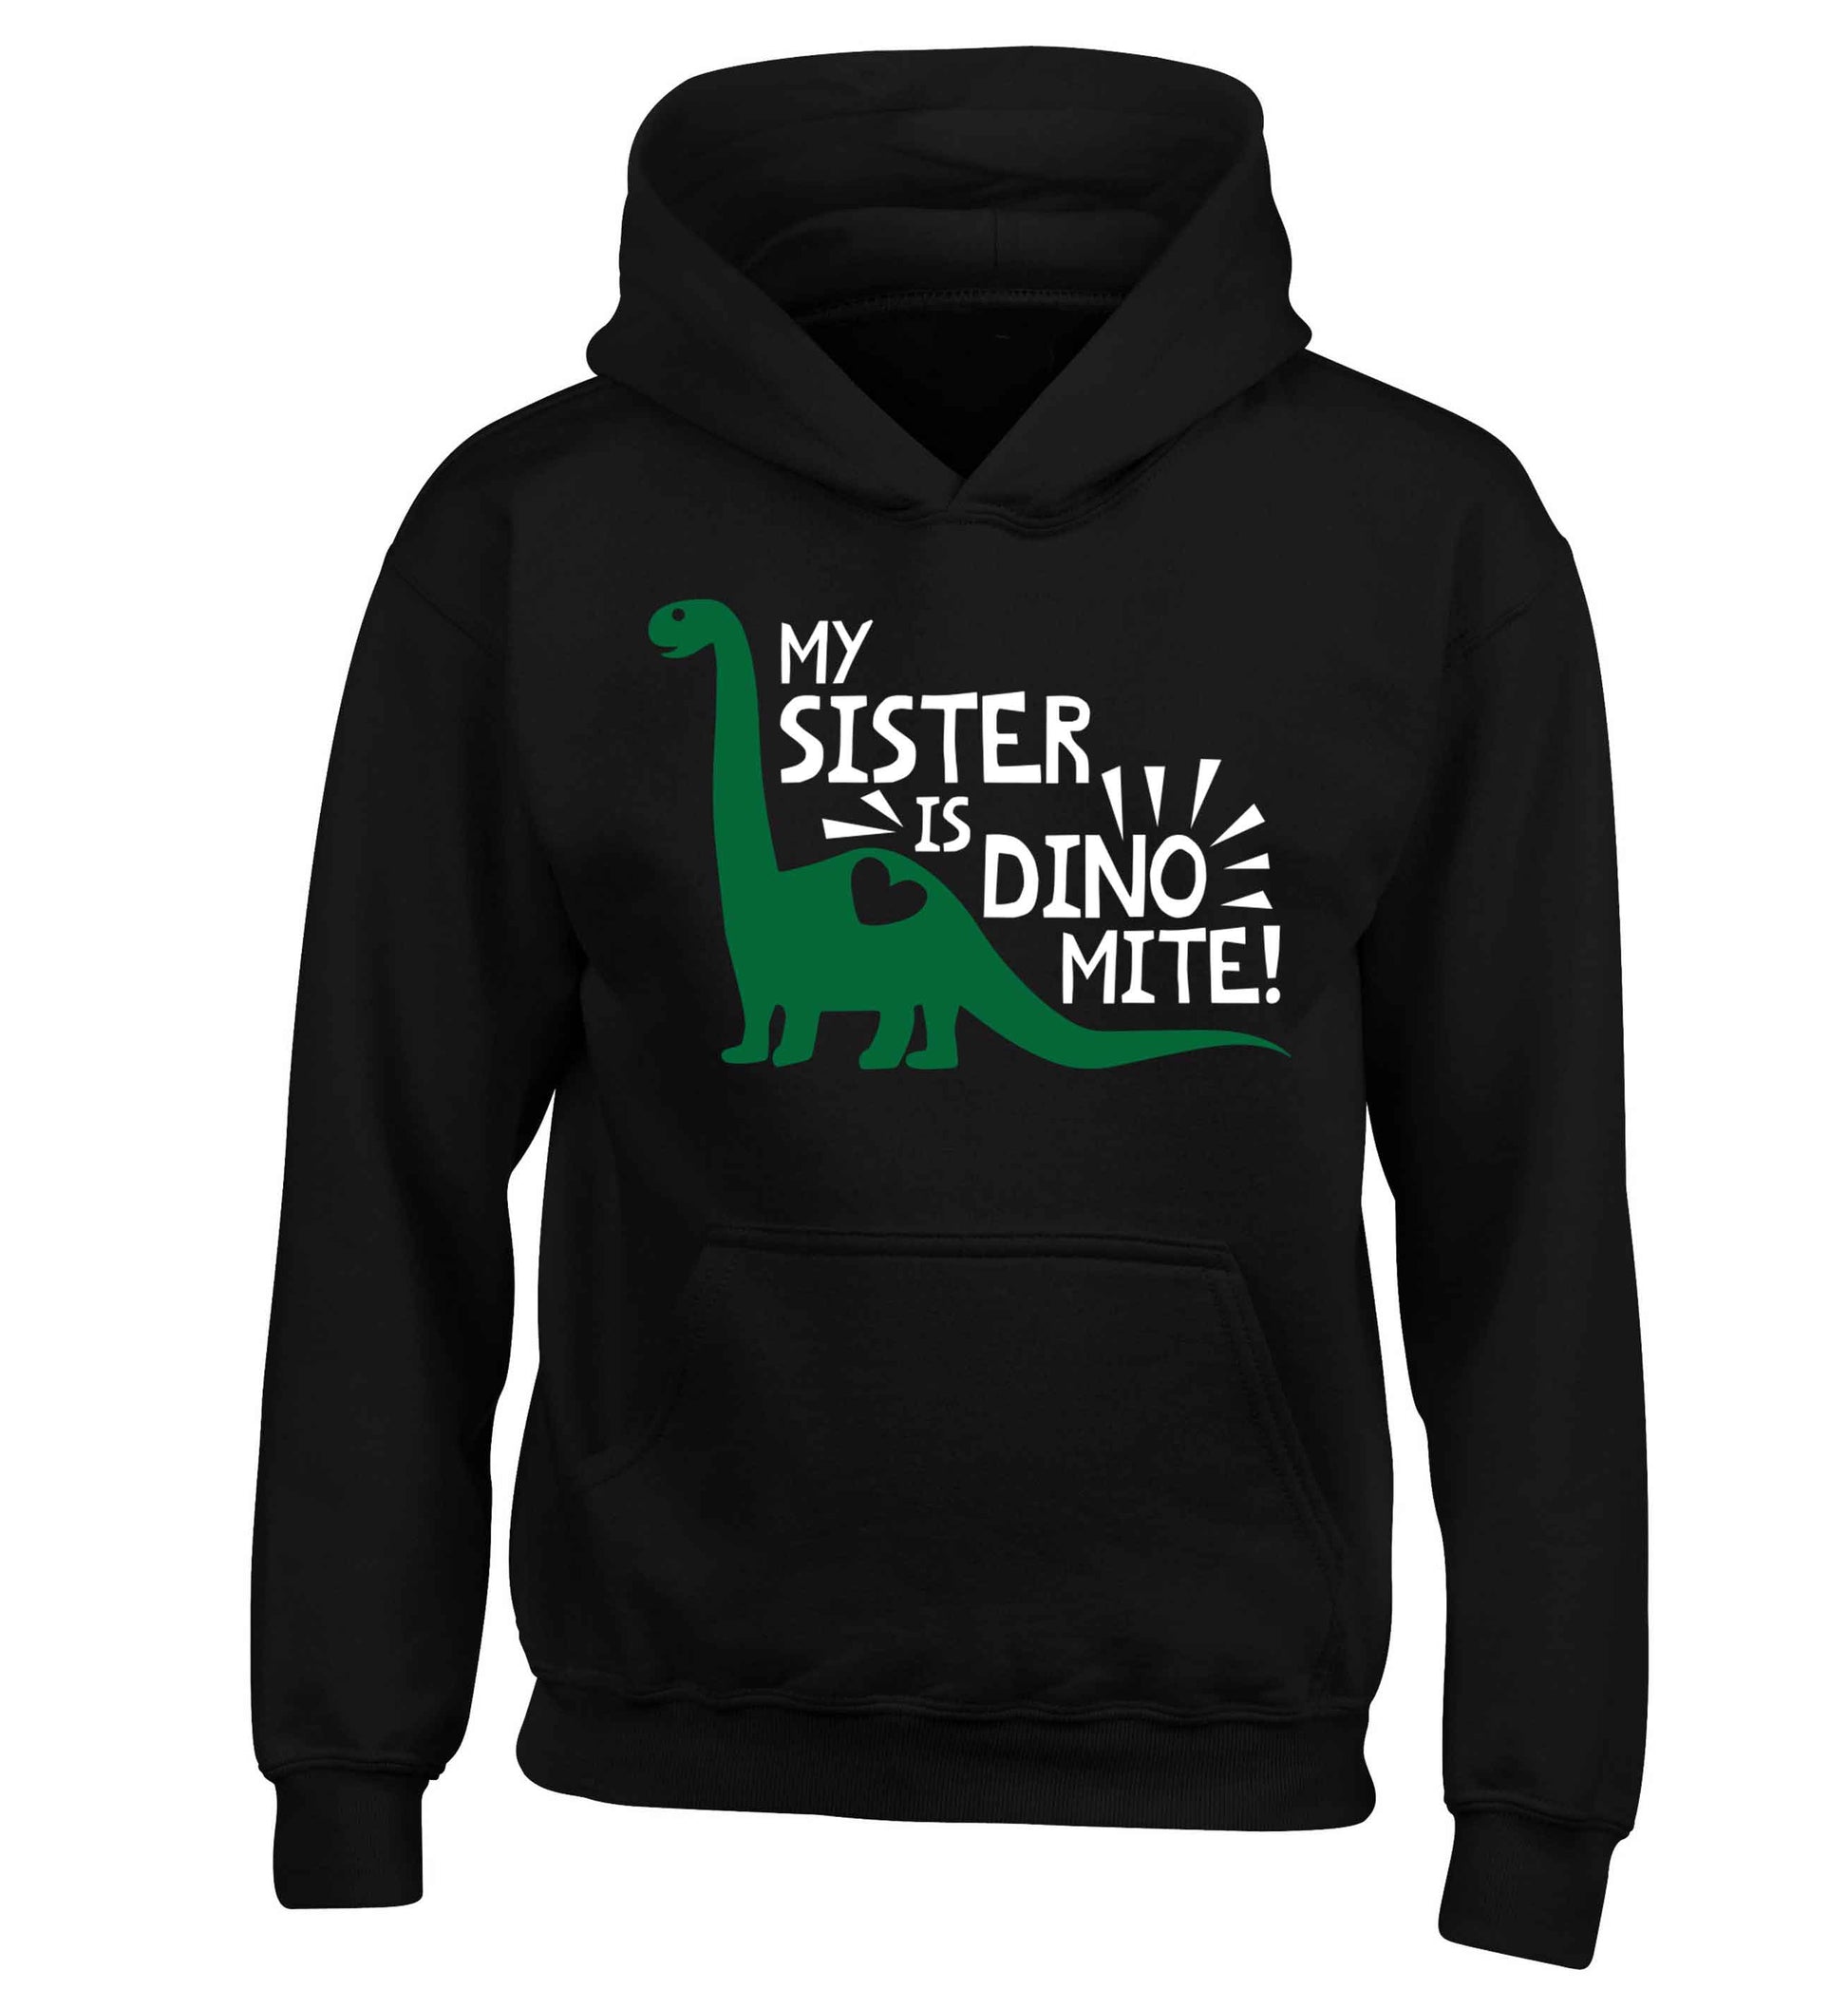 My sister is dinomite! children's black hoodie 12-13 Years